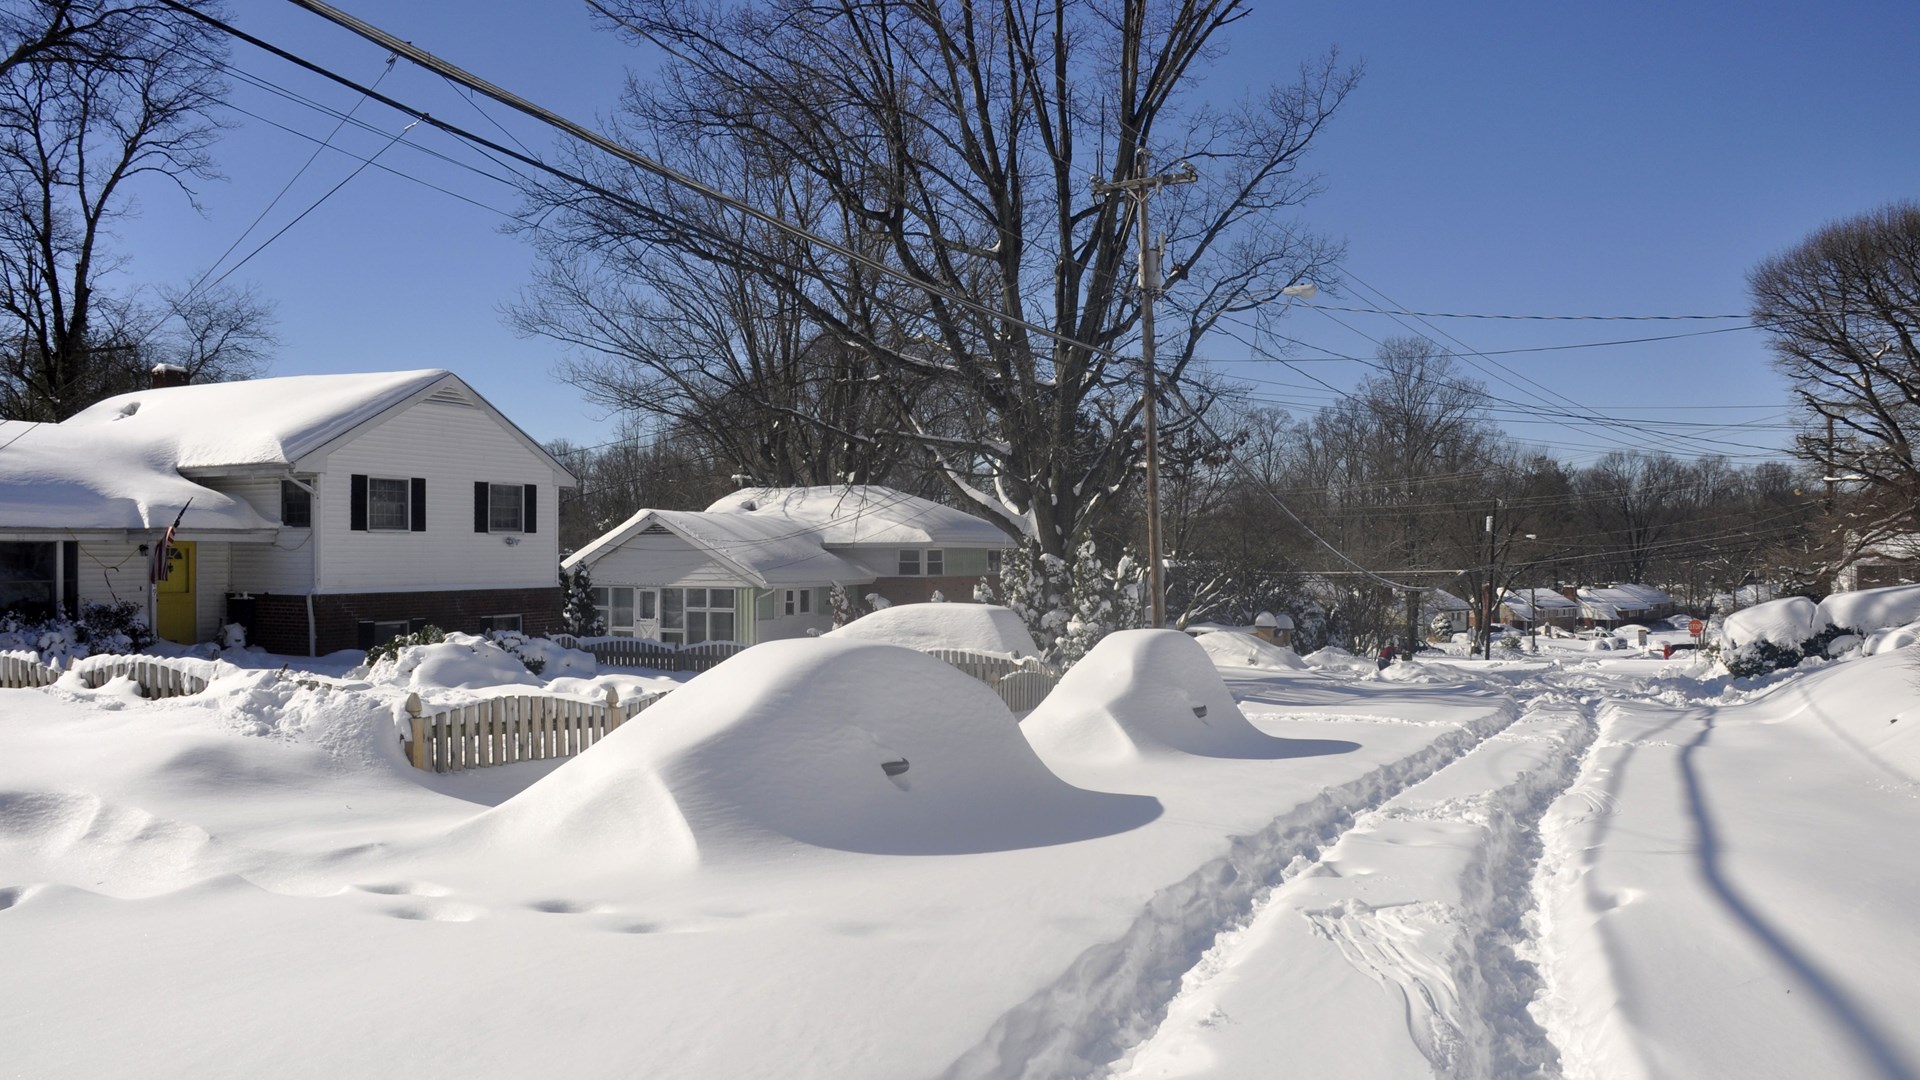 Σφοδρή χιονοθύελλα πλήττει τις βορειοανατολικές ΗΠΑ – ΦΩΤΟ